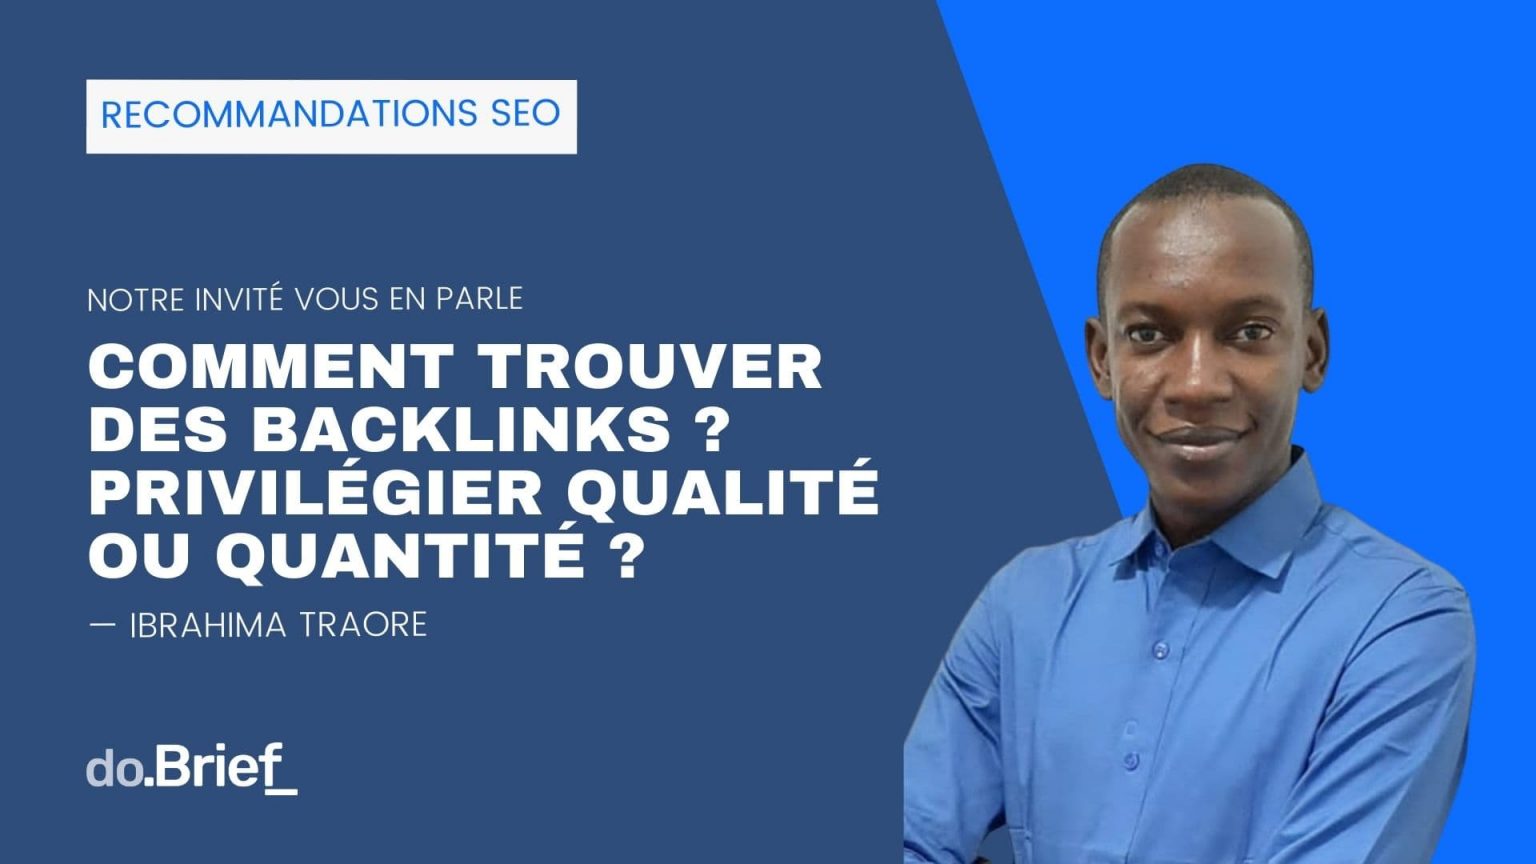 Recommandations SEO : Comment trouver des backlinks ? Article écrit par Ibrahima TRAORE